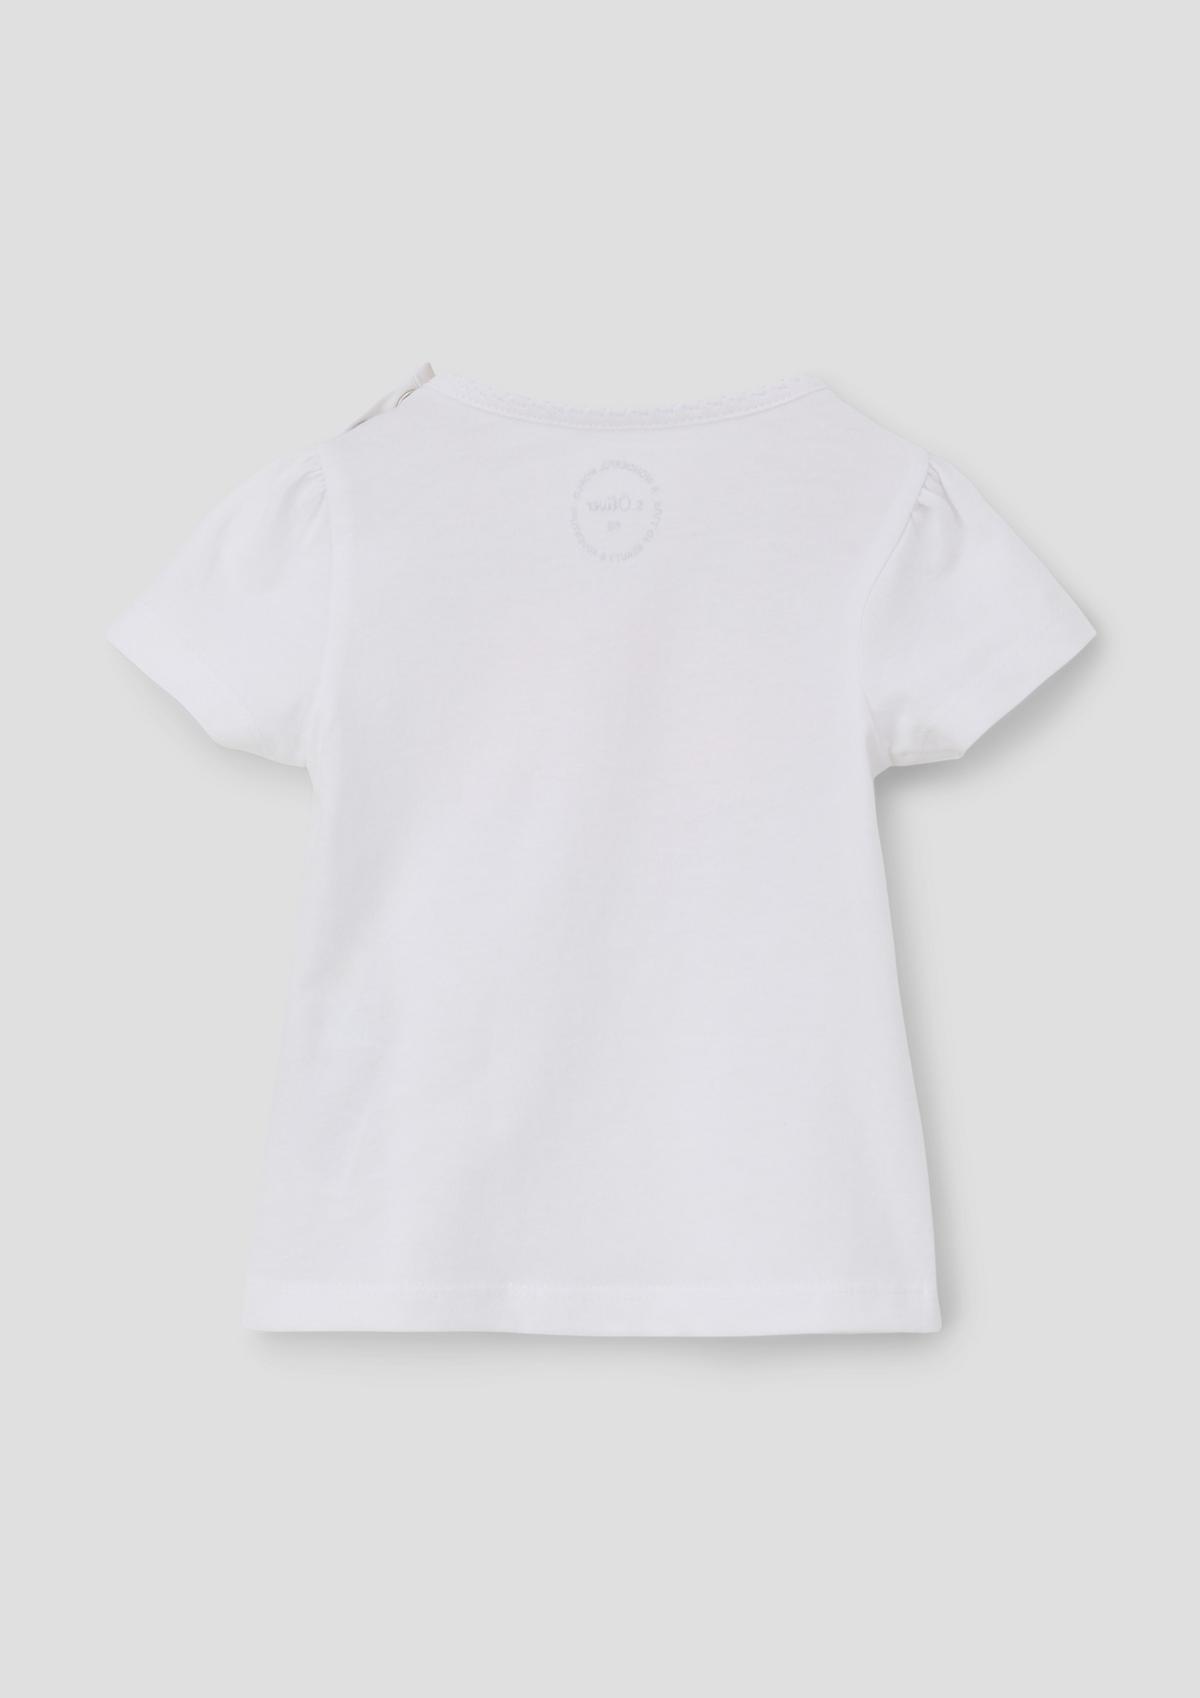 s.Oliver T-shirt à motif flamant rose artistique